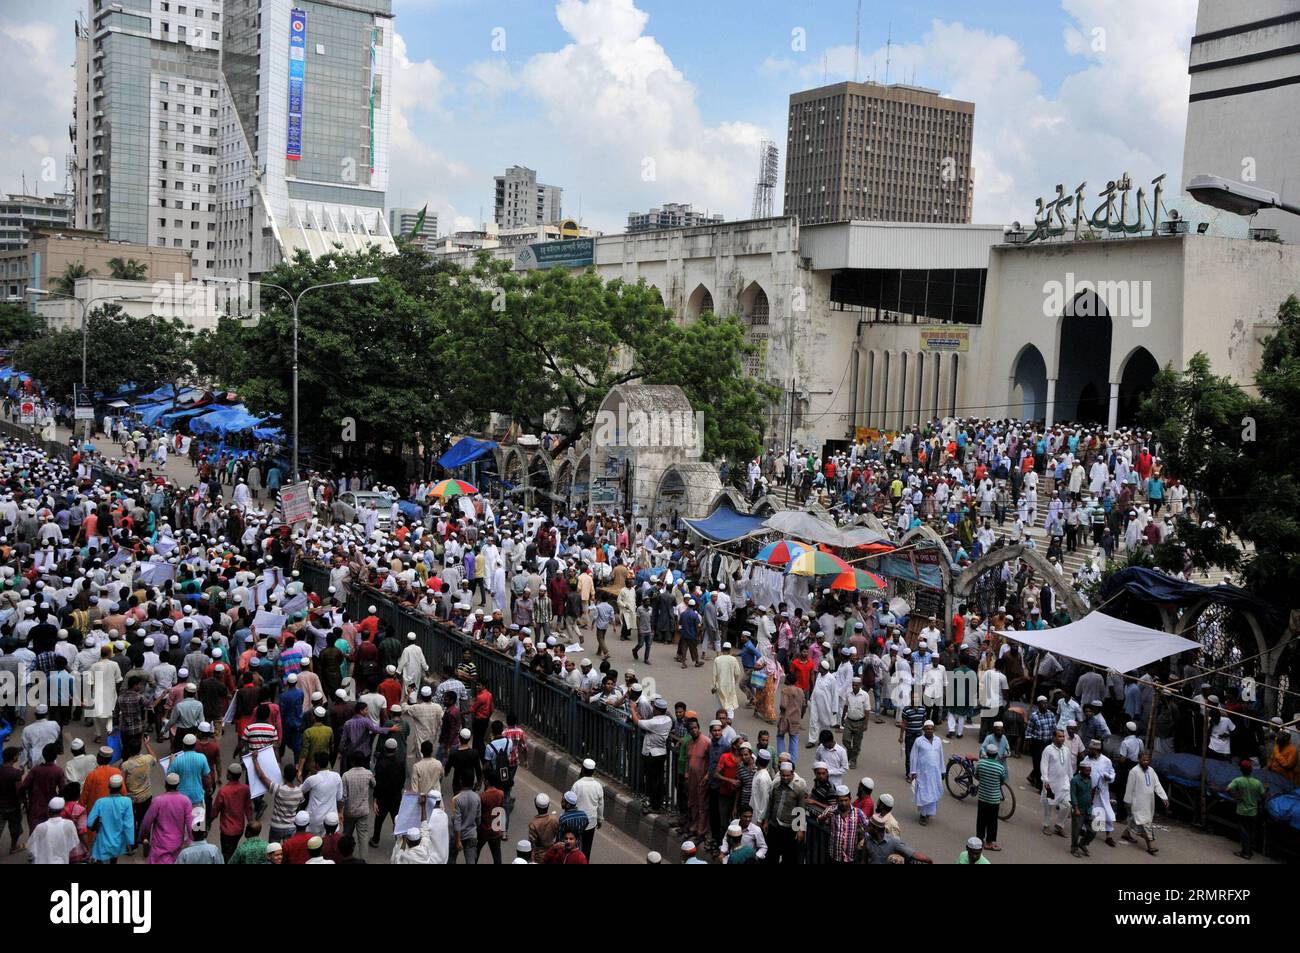 (140718) -- DHAKA, 18 juillet 2014 (Xinhua) -- des musulmans bangladais participent à un rassemblement de protestation contre les raids aériens israéliens en cours sur la bande de Gaza, qui ont fait plus de 260 morts et plus de 1 700 blessés, à Dhaka, Bangladesh, le 18 juillet 2014. Des milliers de personnes ont pris part à la manifestation devant la Mosquée nationale de Dhaka contre les frappes aériennes israéliennes sur la bande de Gaza vendredi. (Xinhua/Shariful Islam) BANGLADESH-DHAKA-ISRAEL-PROTEST PUBLICATIONxNOTxINxCHN Dhaka juillet 18 2014 XINHUA des musulmans bangladais participent à un rassemblement de protestation contre les raids aériens israéliens en cours SUR la bande de Gaza Thatcher est parti Banque D'Images